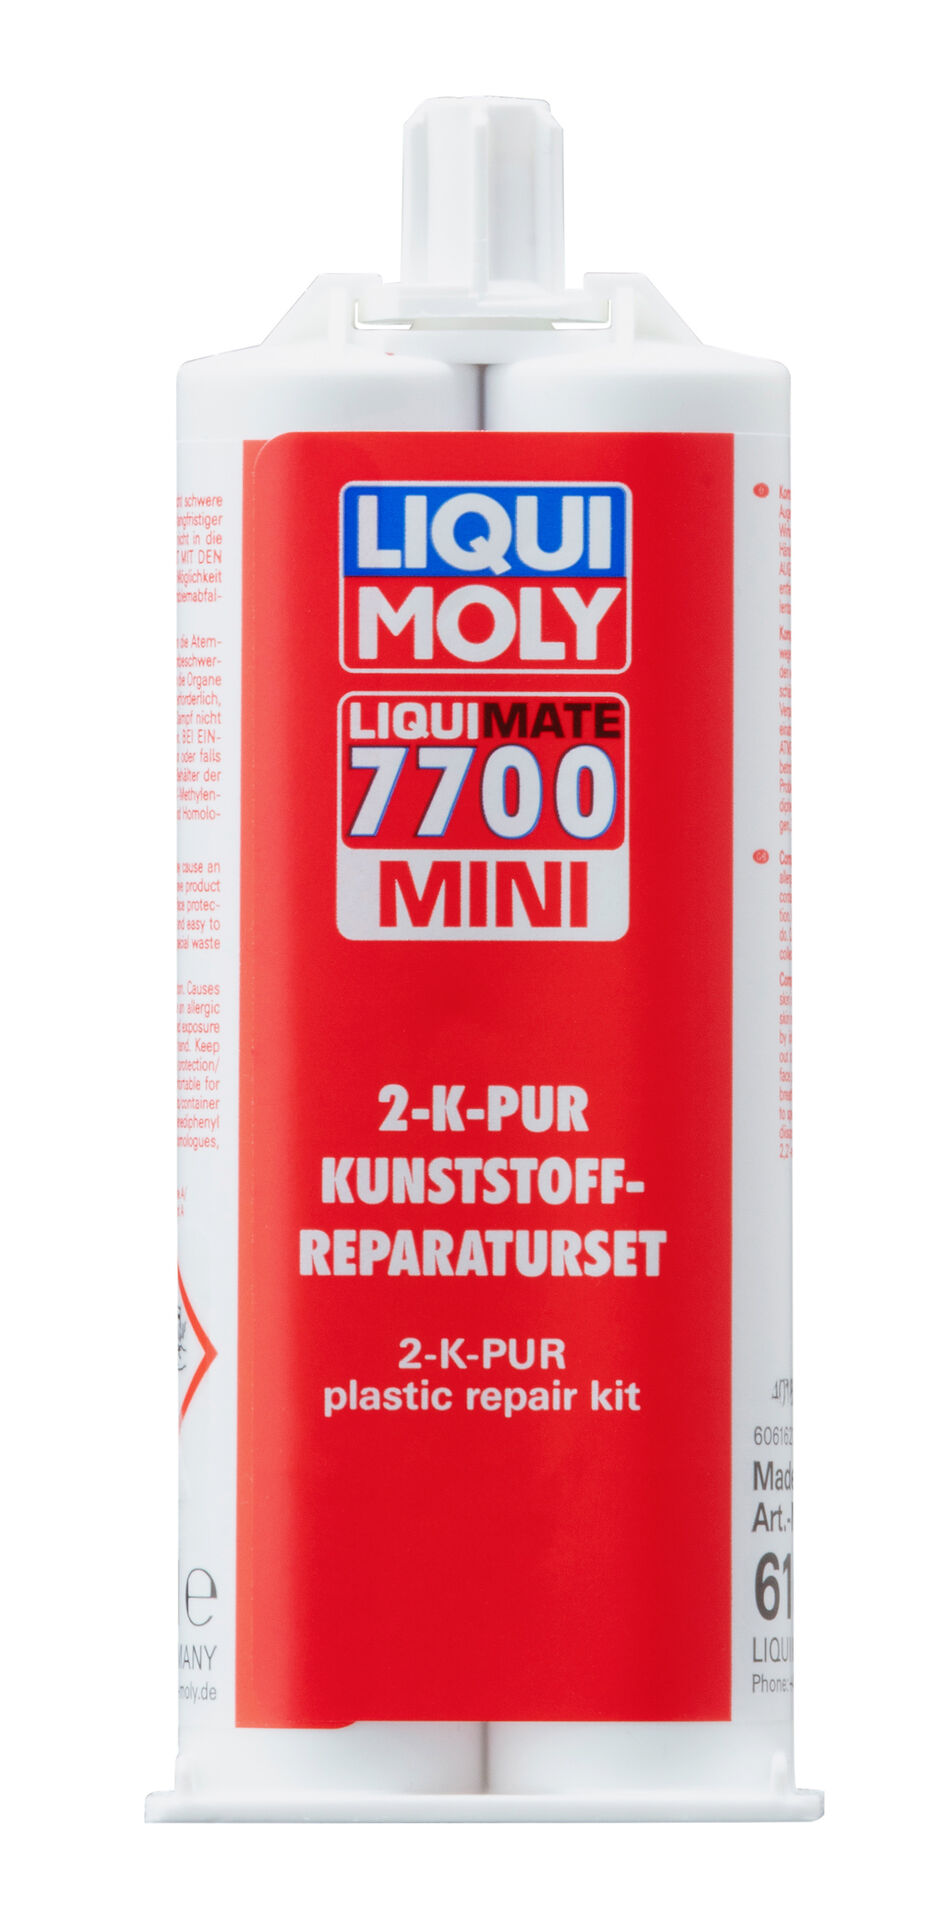 Liqui Moly Liquimate 7700 Mini Heißkleber Kunststoff Reparaturset 50 ml